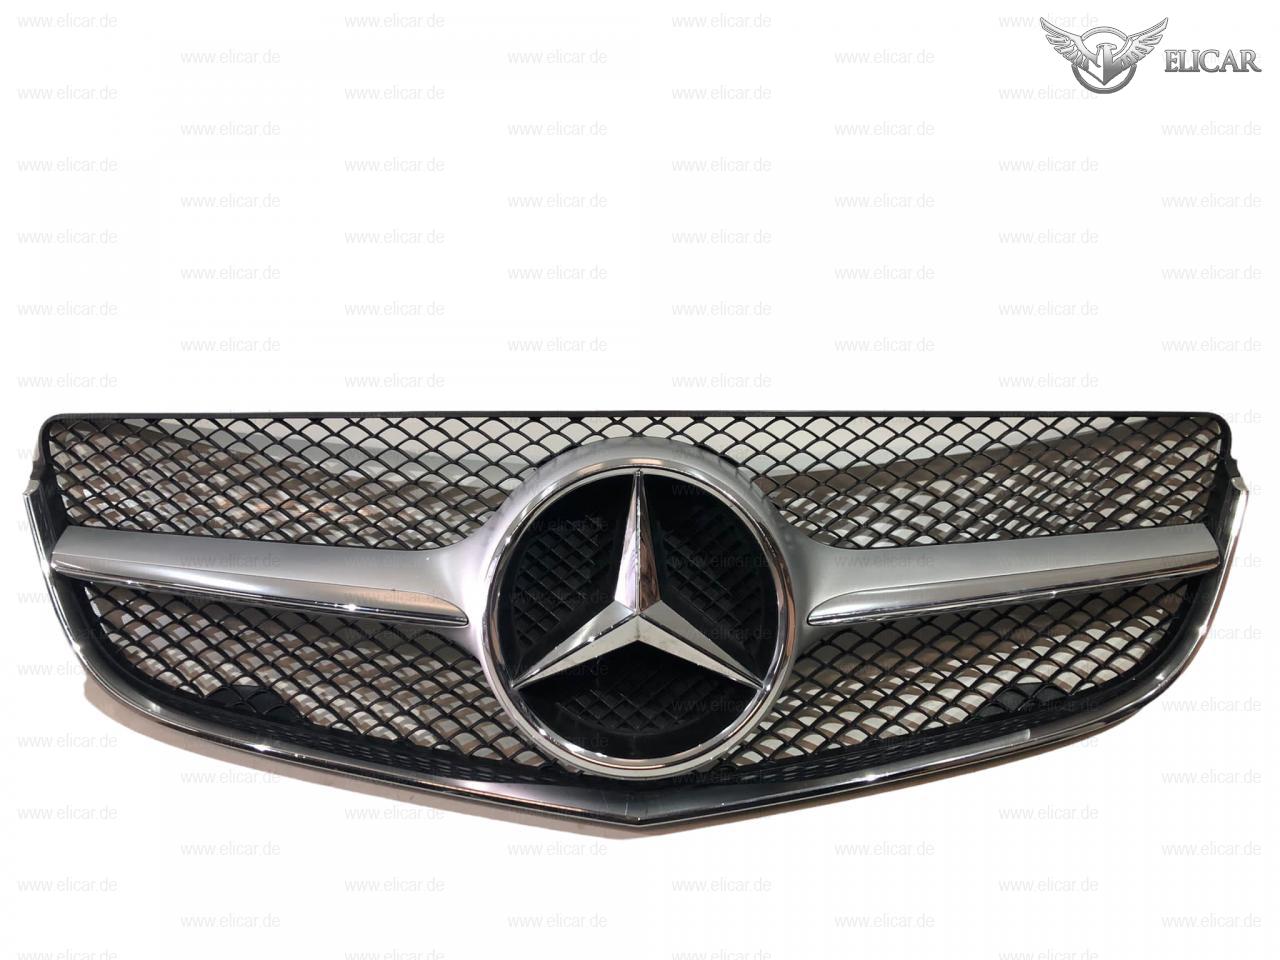 Grill / Kühlerverkleidung mit Stern   für Mercedes-Benz 